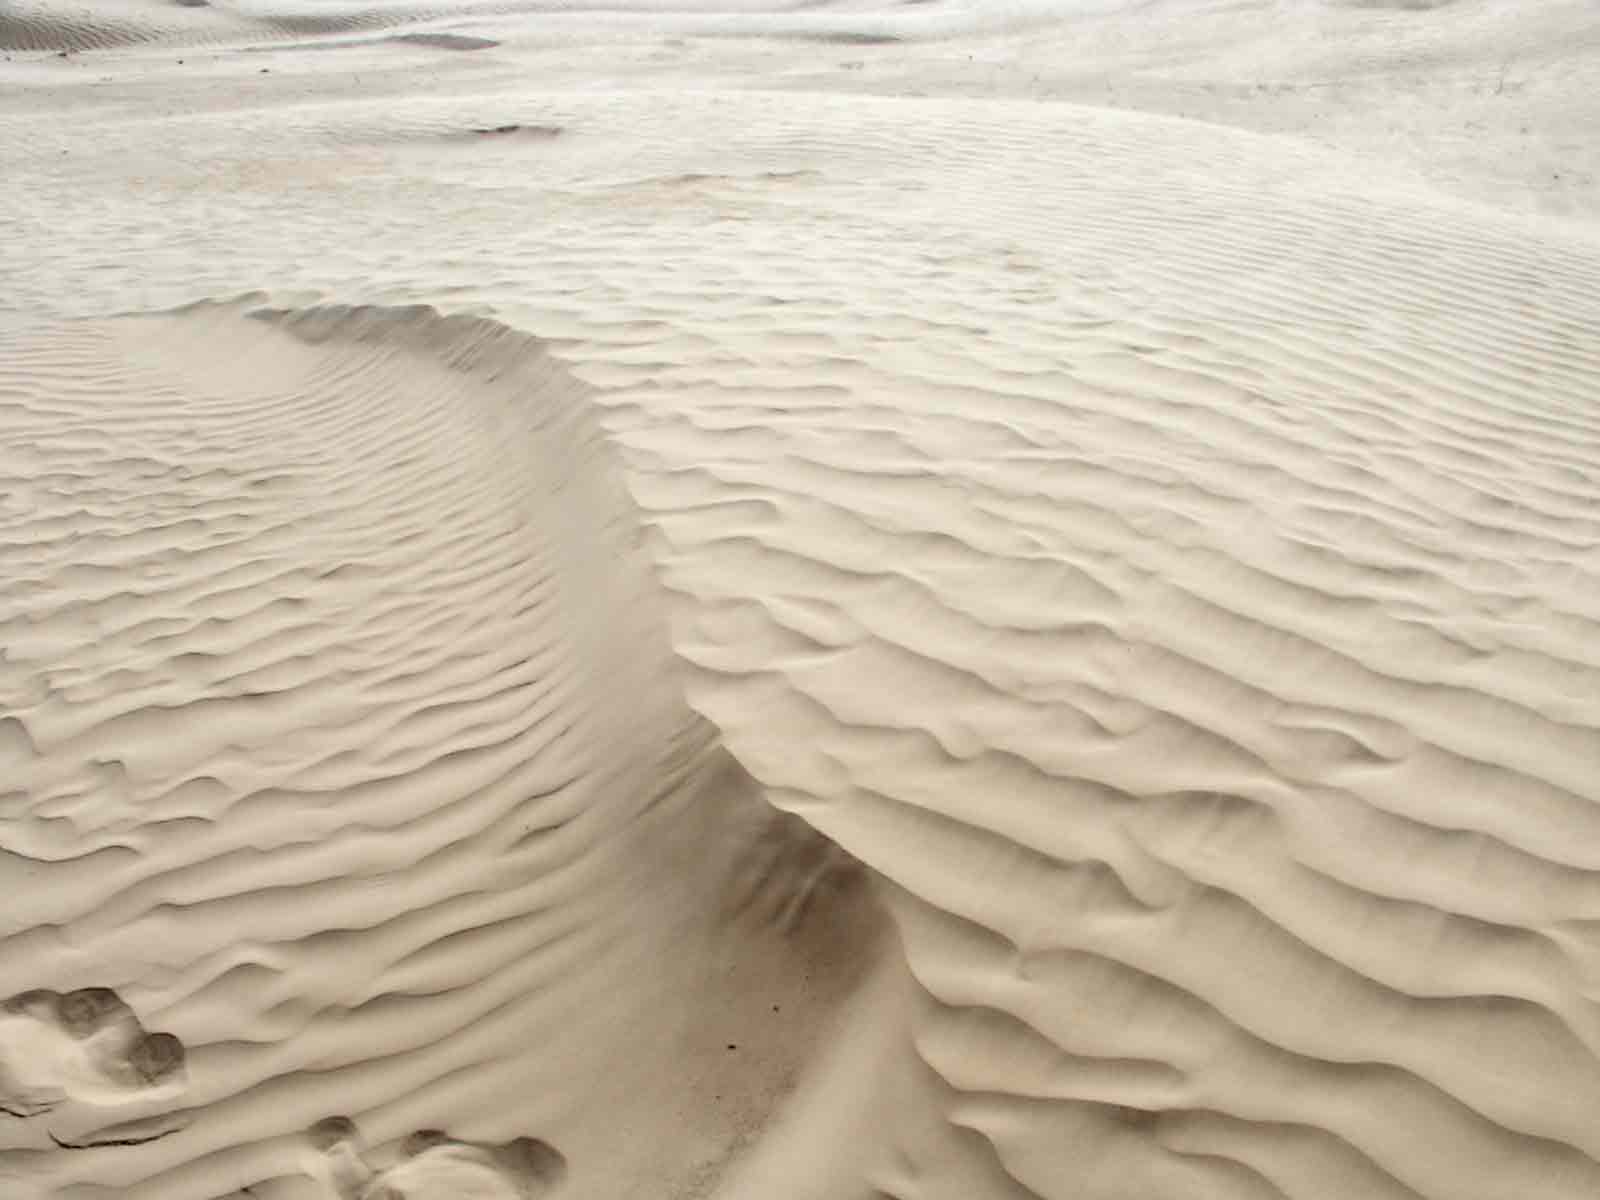  Qaa Qenymin o grão de areia (Apresentação) Sabbia del deserto